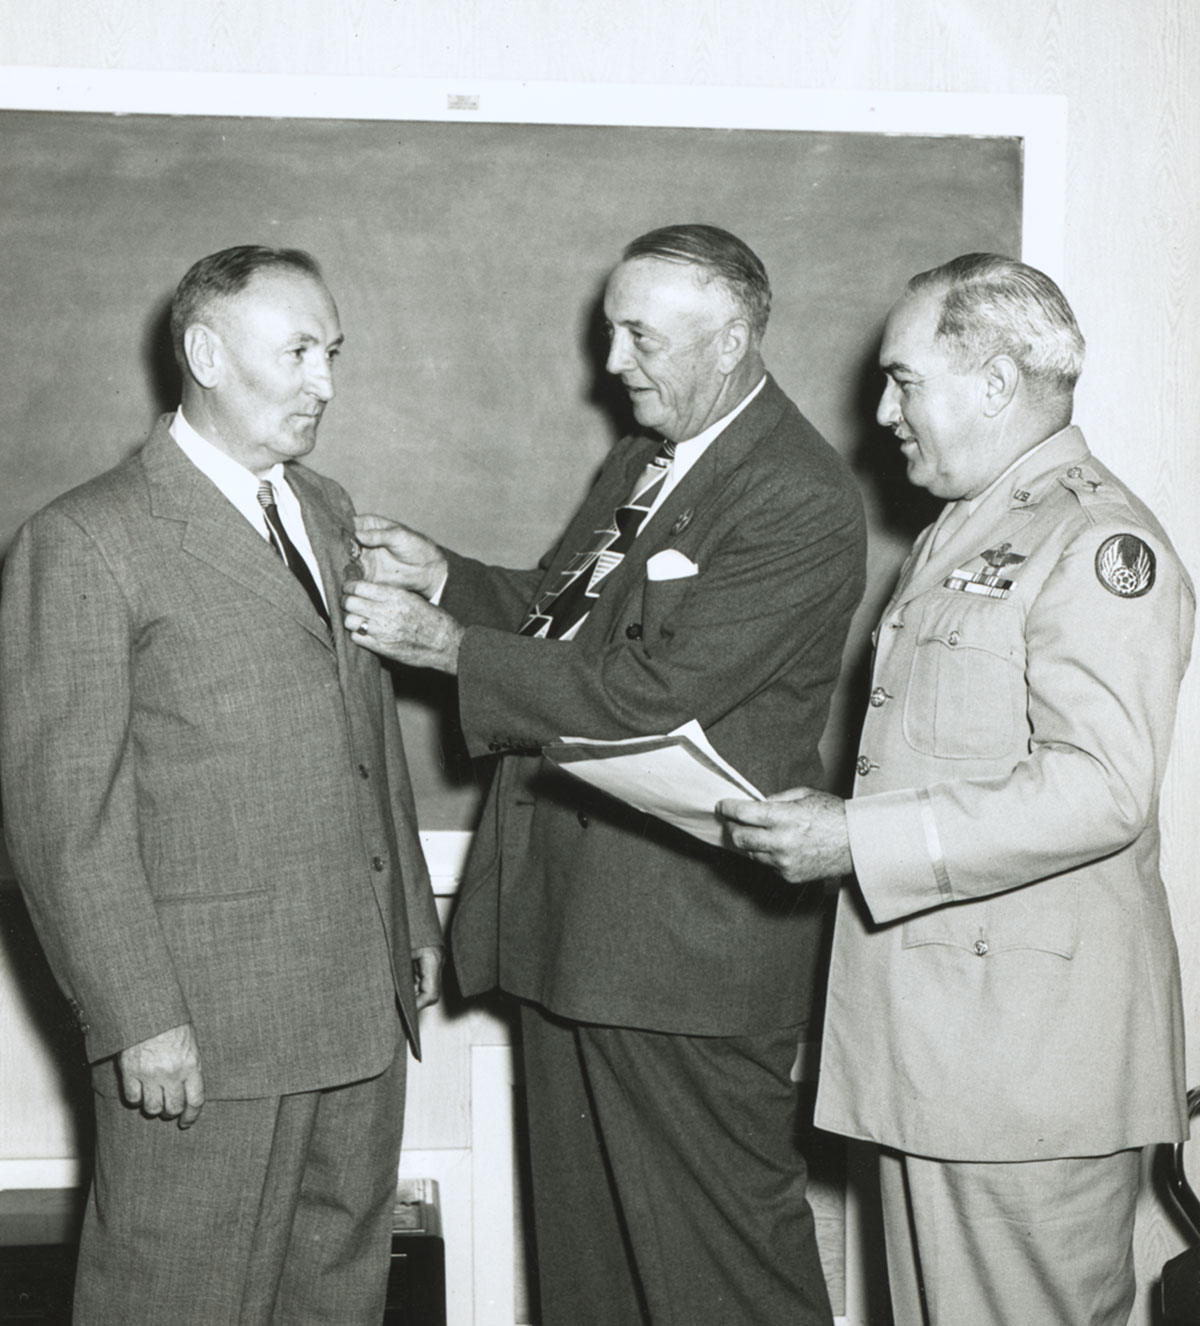 В 1949 году Фриц Цвикки был награжден Медалью свободы. В то время это была одна из двух высших гражданских наград в США.